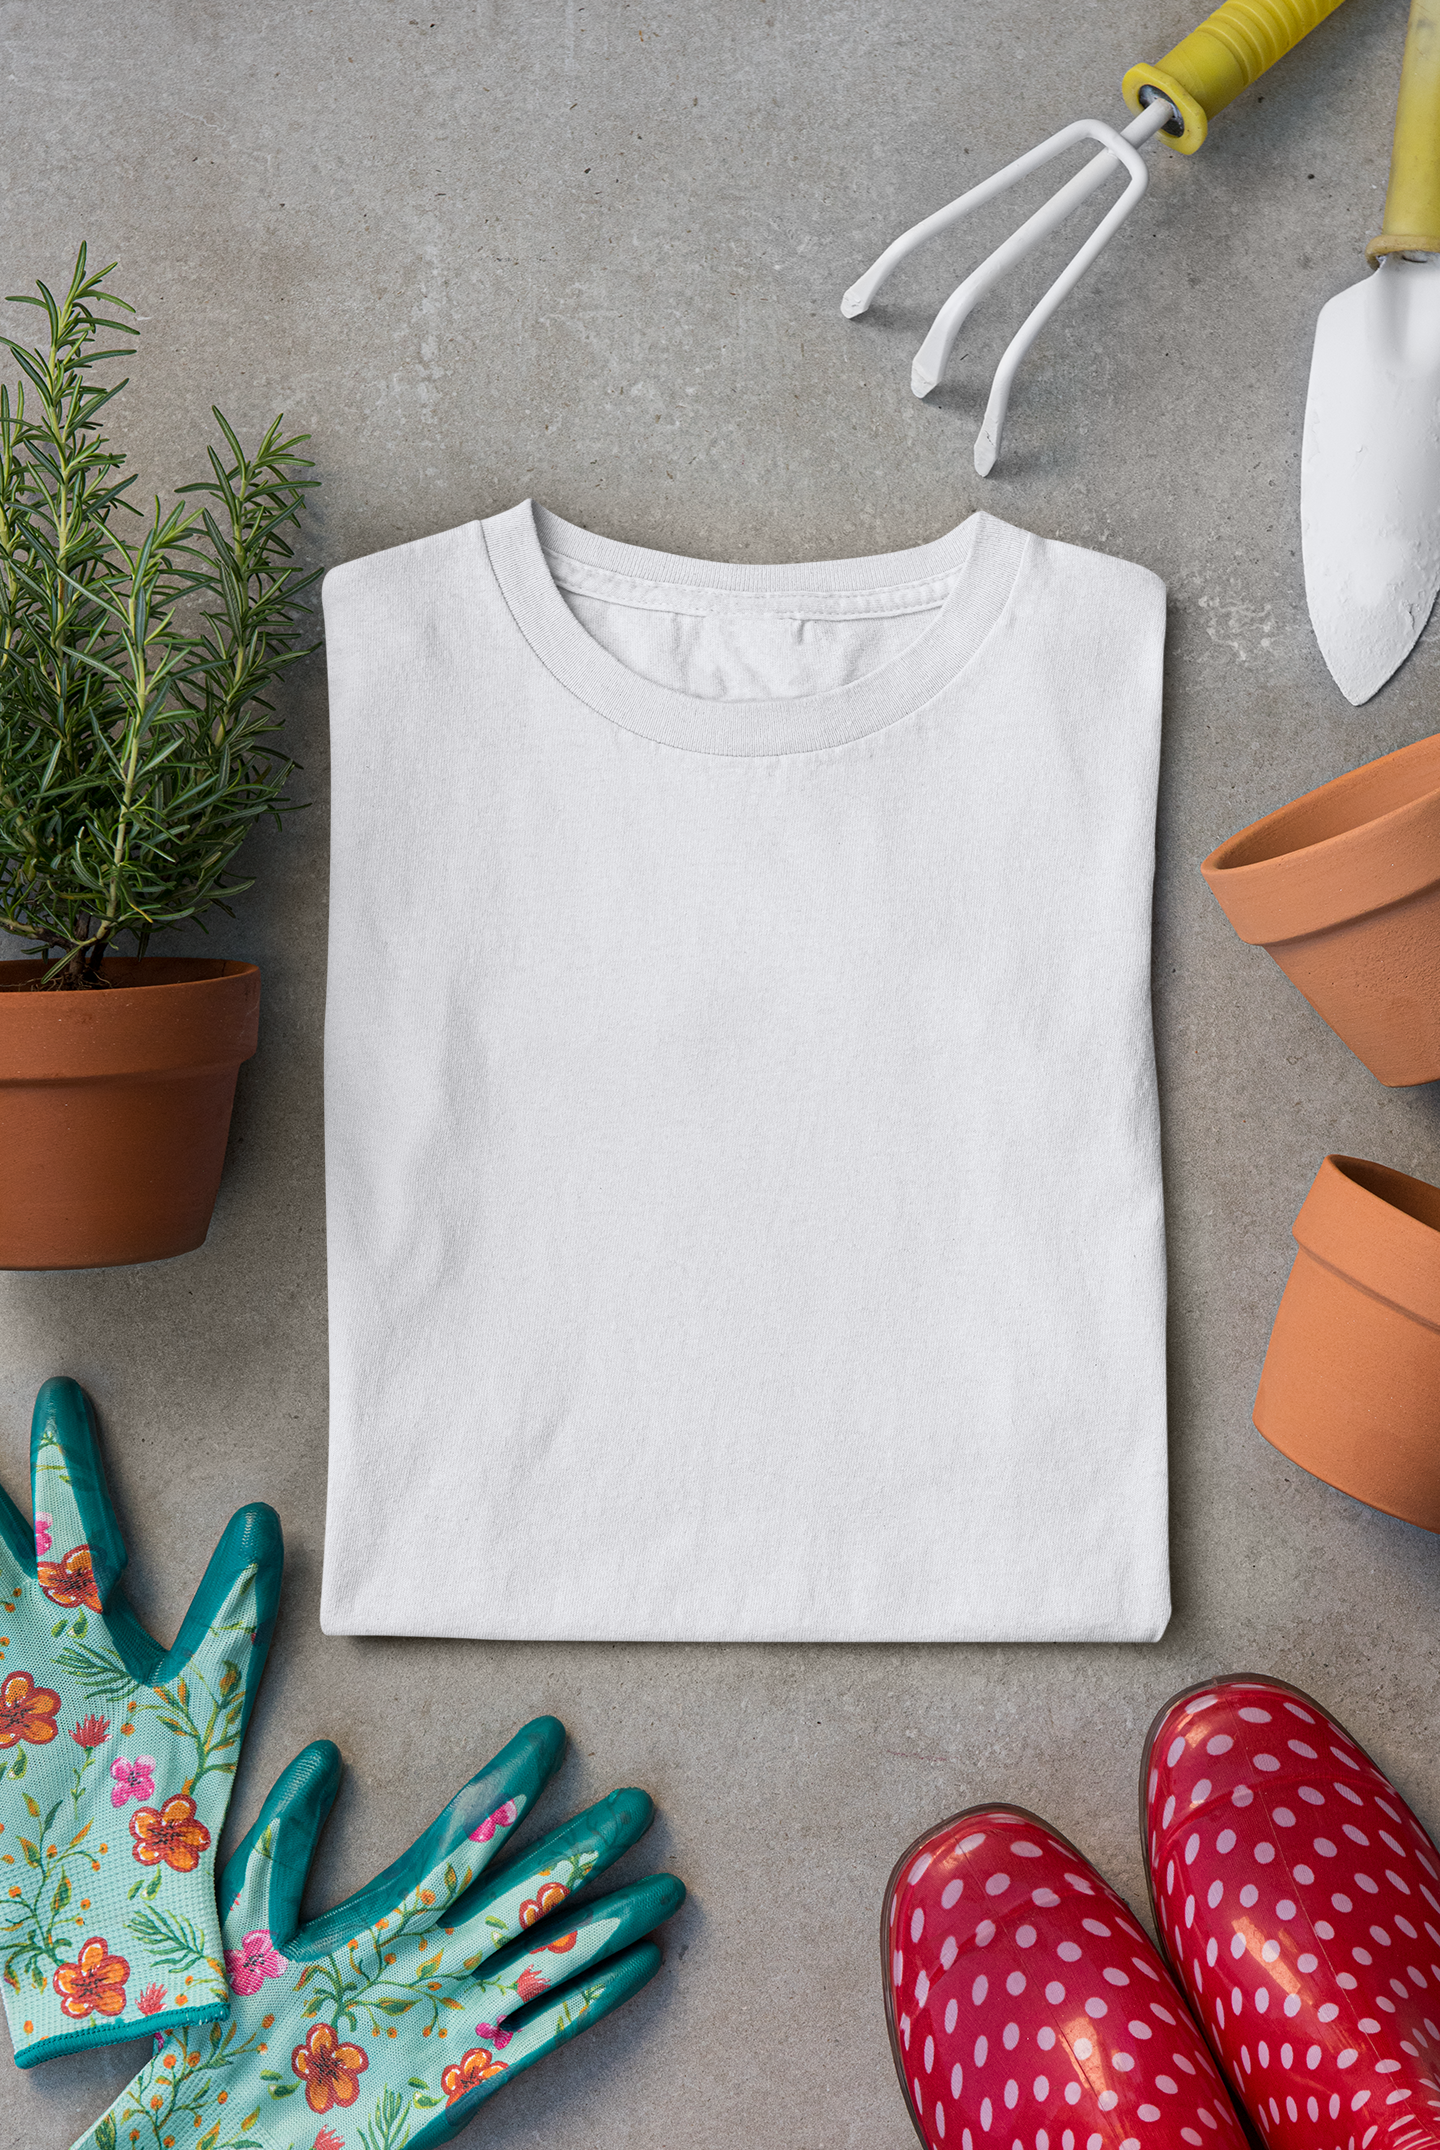 Men's Round neck Cotton T-Shirt (White)